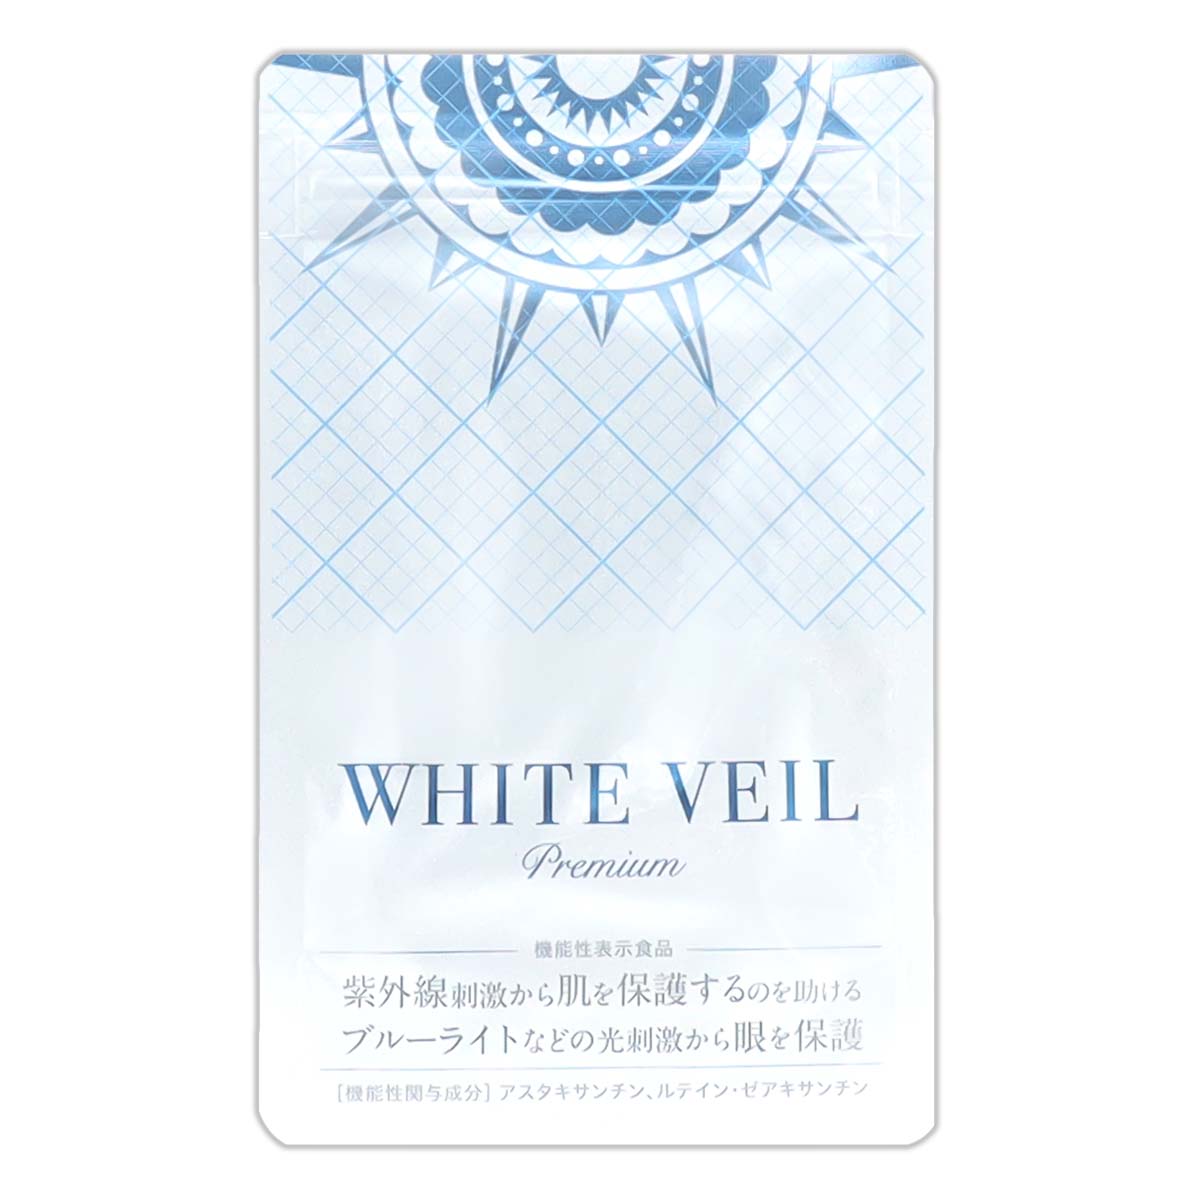 ホワイトヴェールプレミアム WHITE VEIL premium 30粒 ( 約1か月分 ) メール便送料無料SPL / ホワイトヴェールS03-02  / WHTVEL-01P